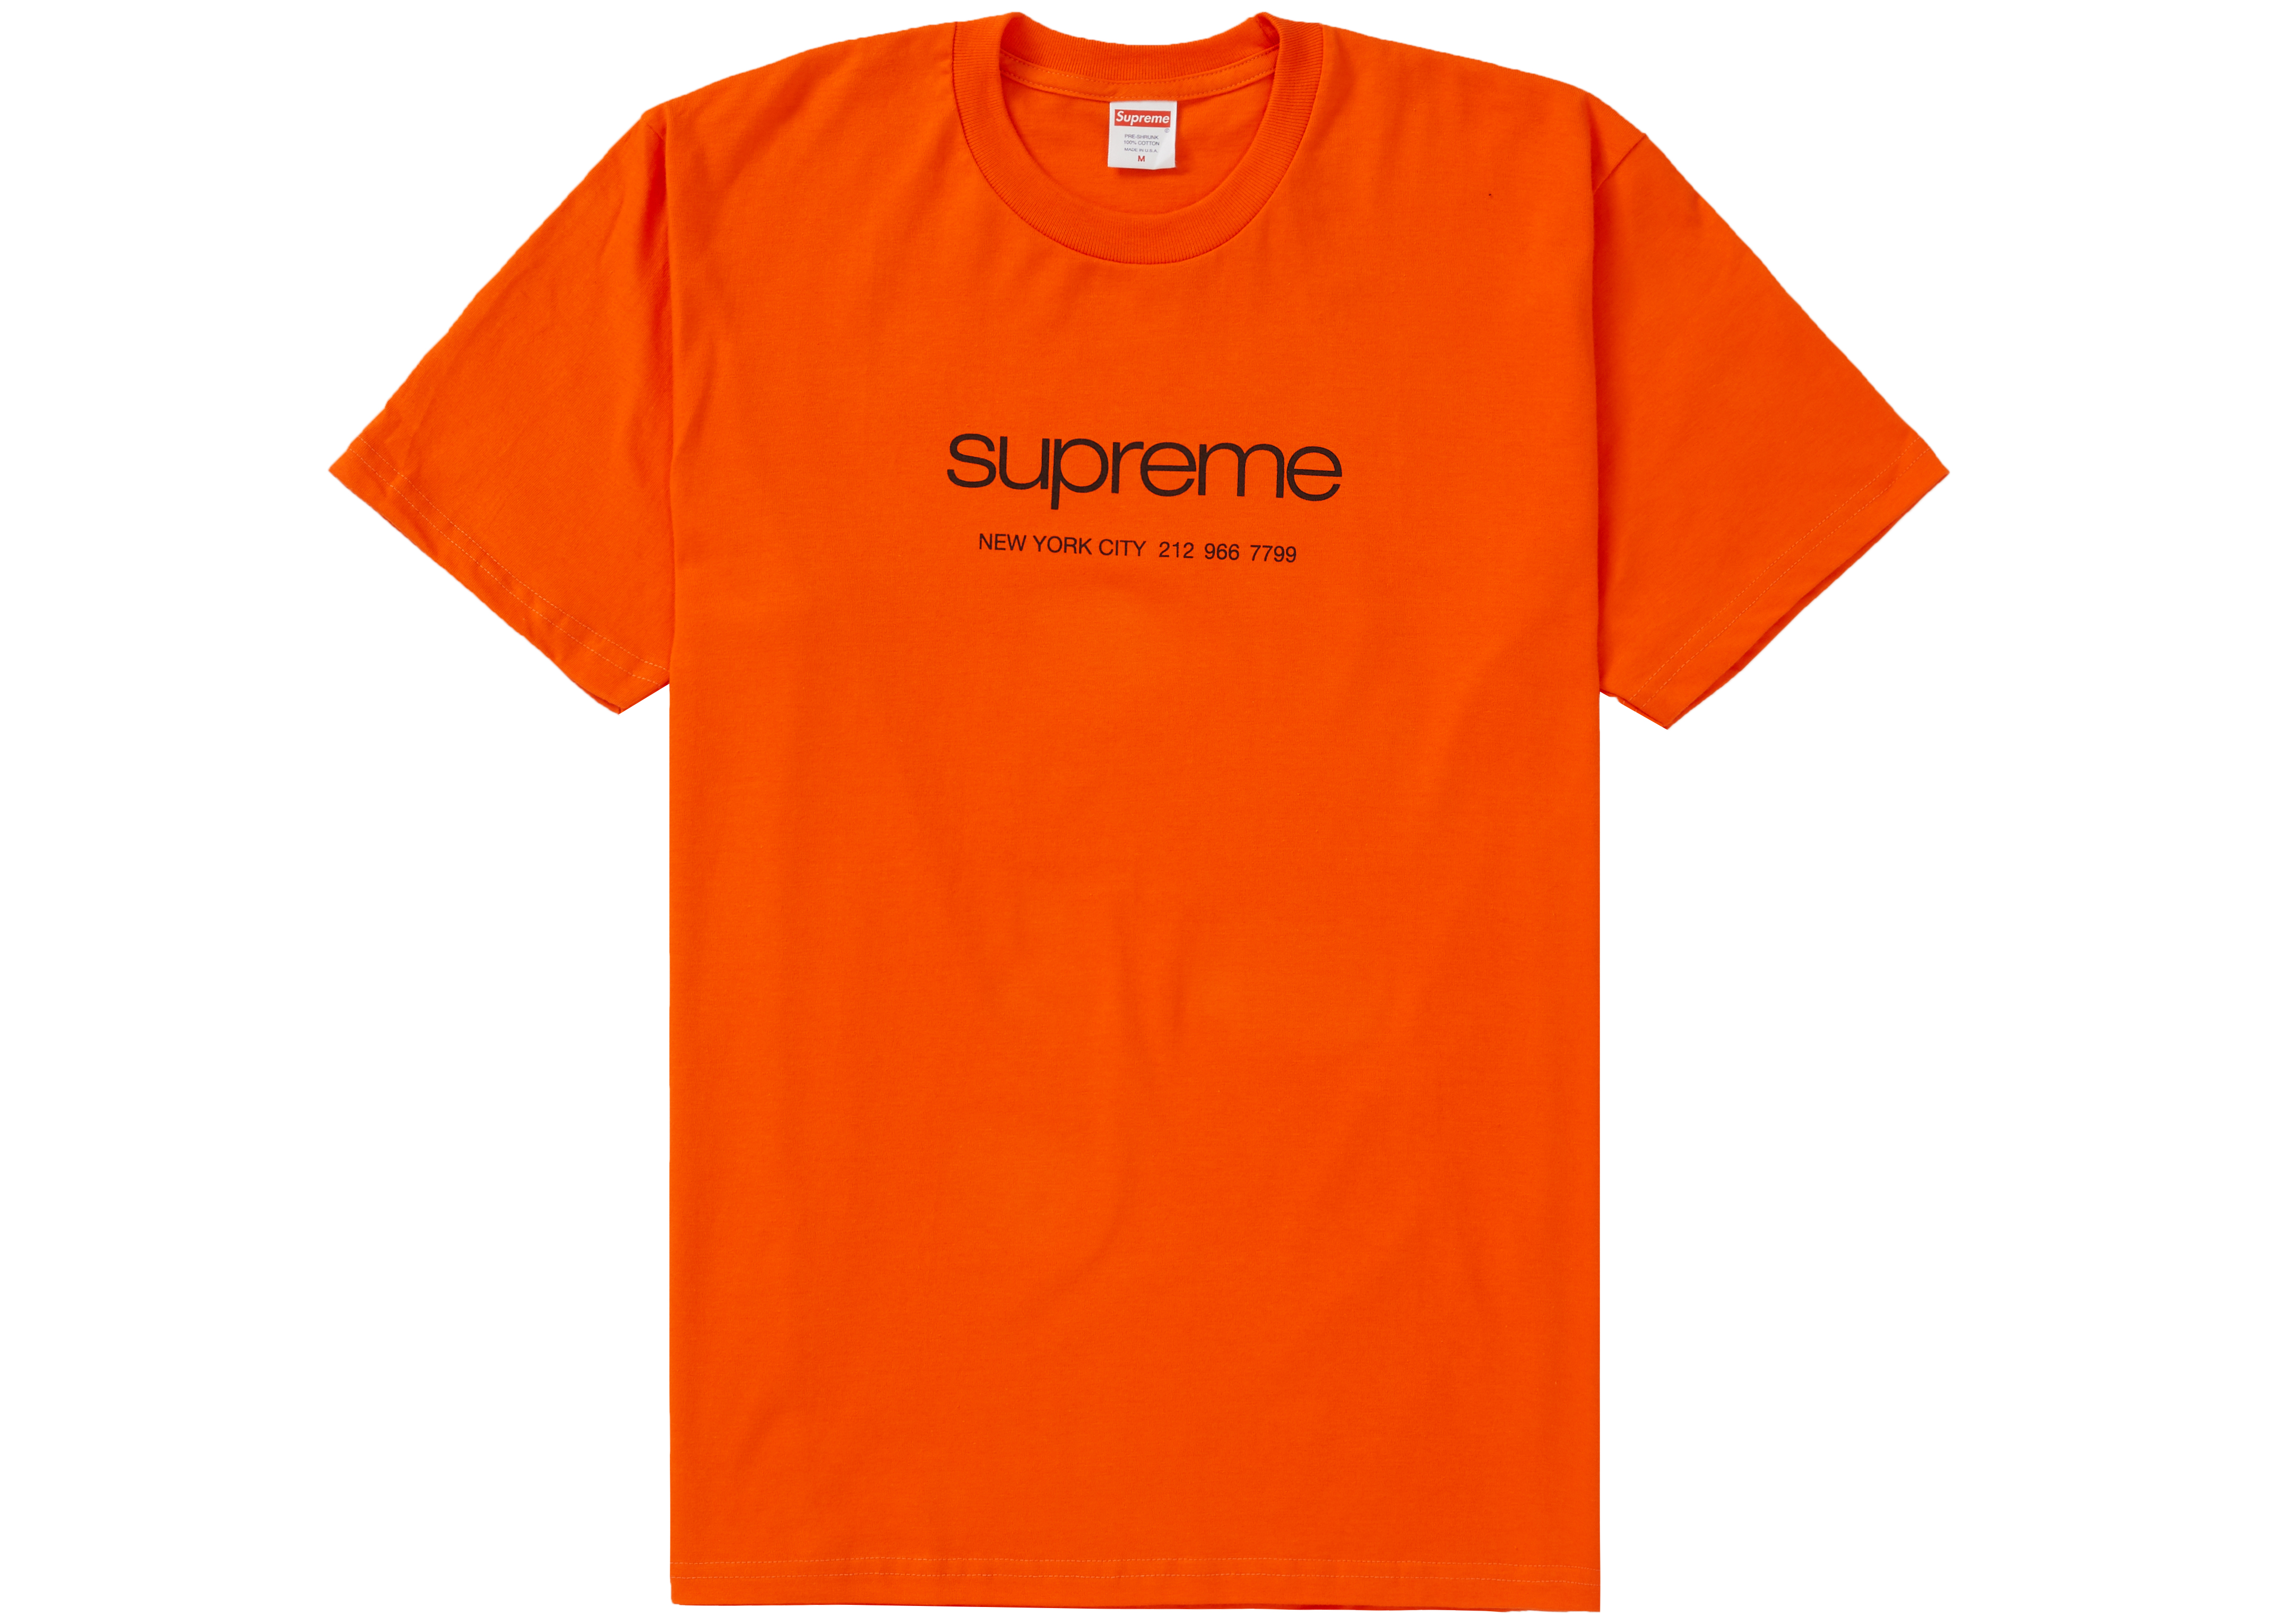 Supreme Canada - Supreme Clothing Sale